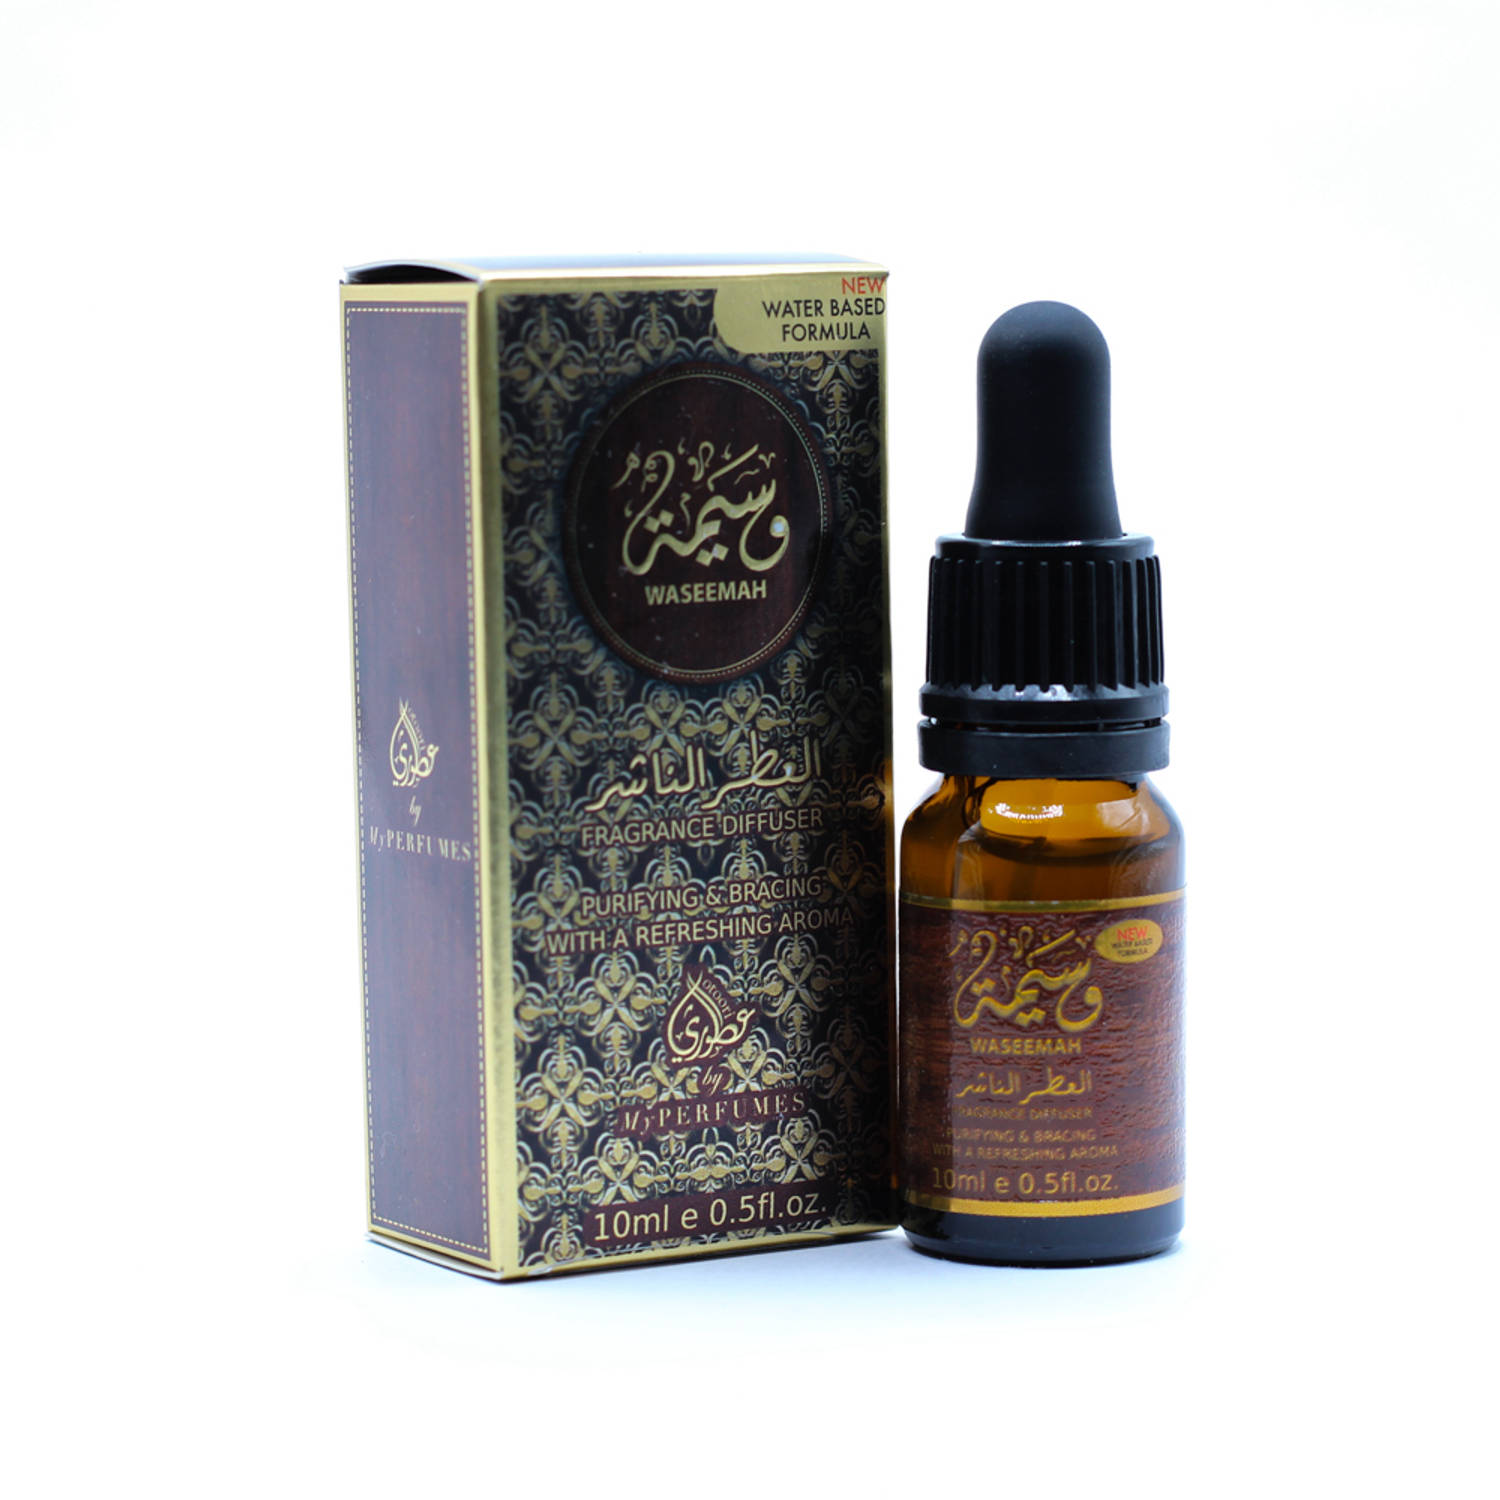 Waseemah - Geurolie - Parfumolie voor aroma diffuser, Luchtbevochtiger of aromabrander - Olie Diffuser - 10 ml